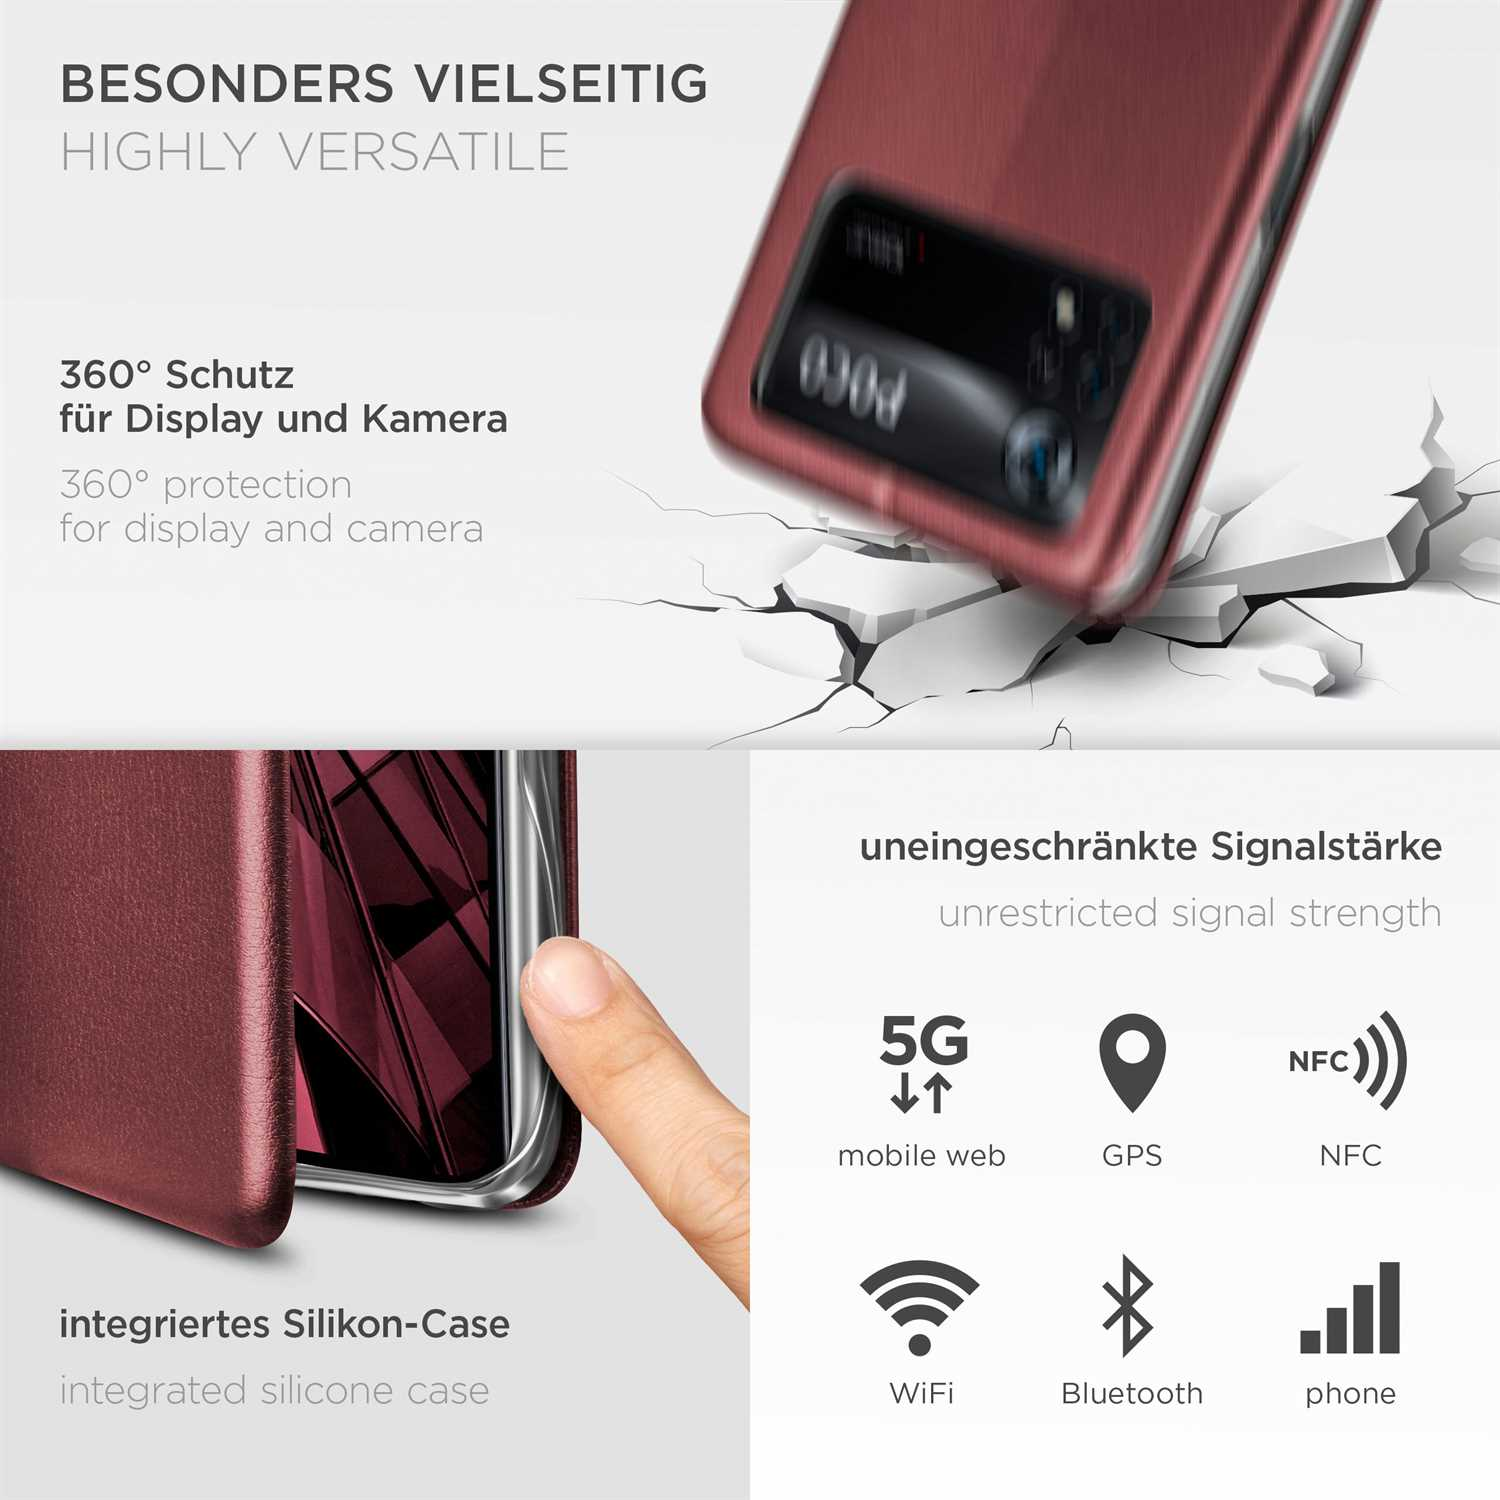 Poco 5G, - Red Burgund X4 ONEFLOW Flip Cover, Pro Xiaomi, Business Case,